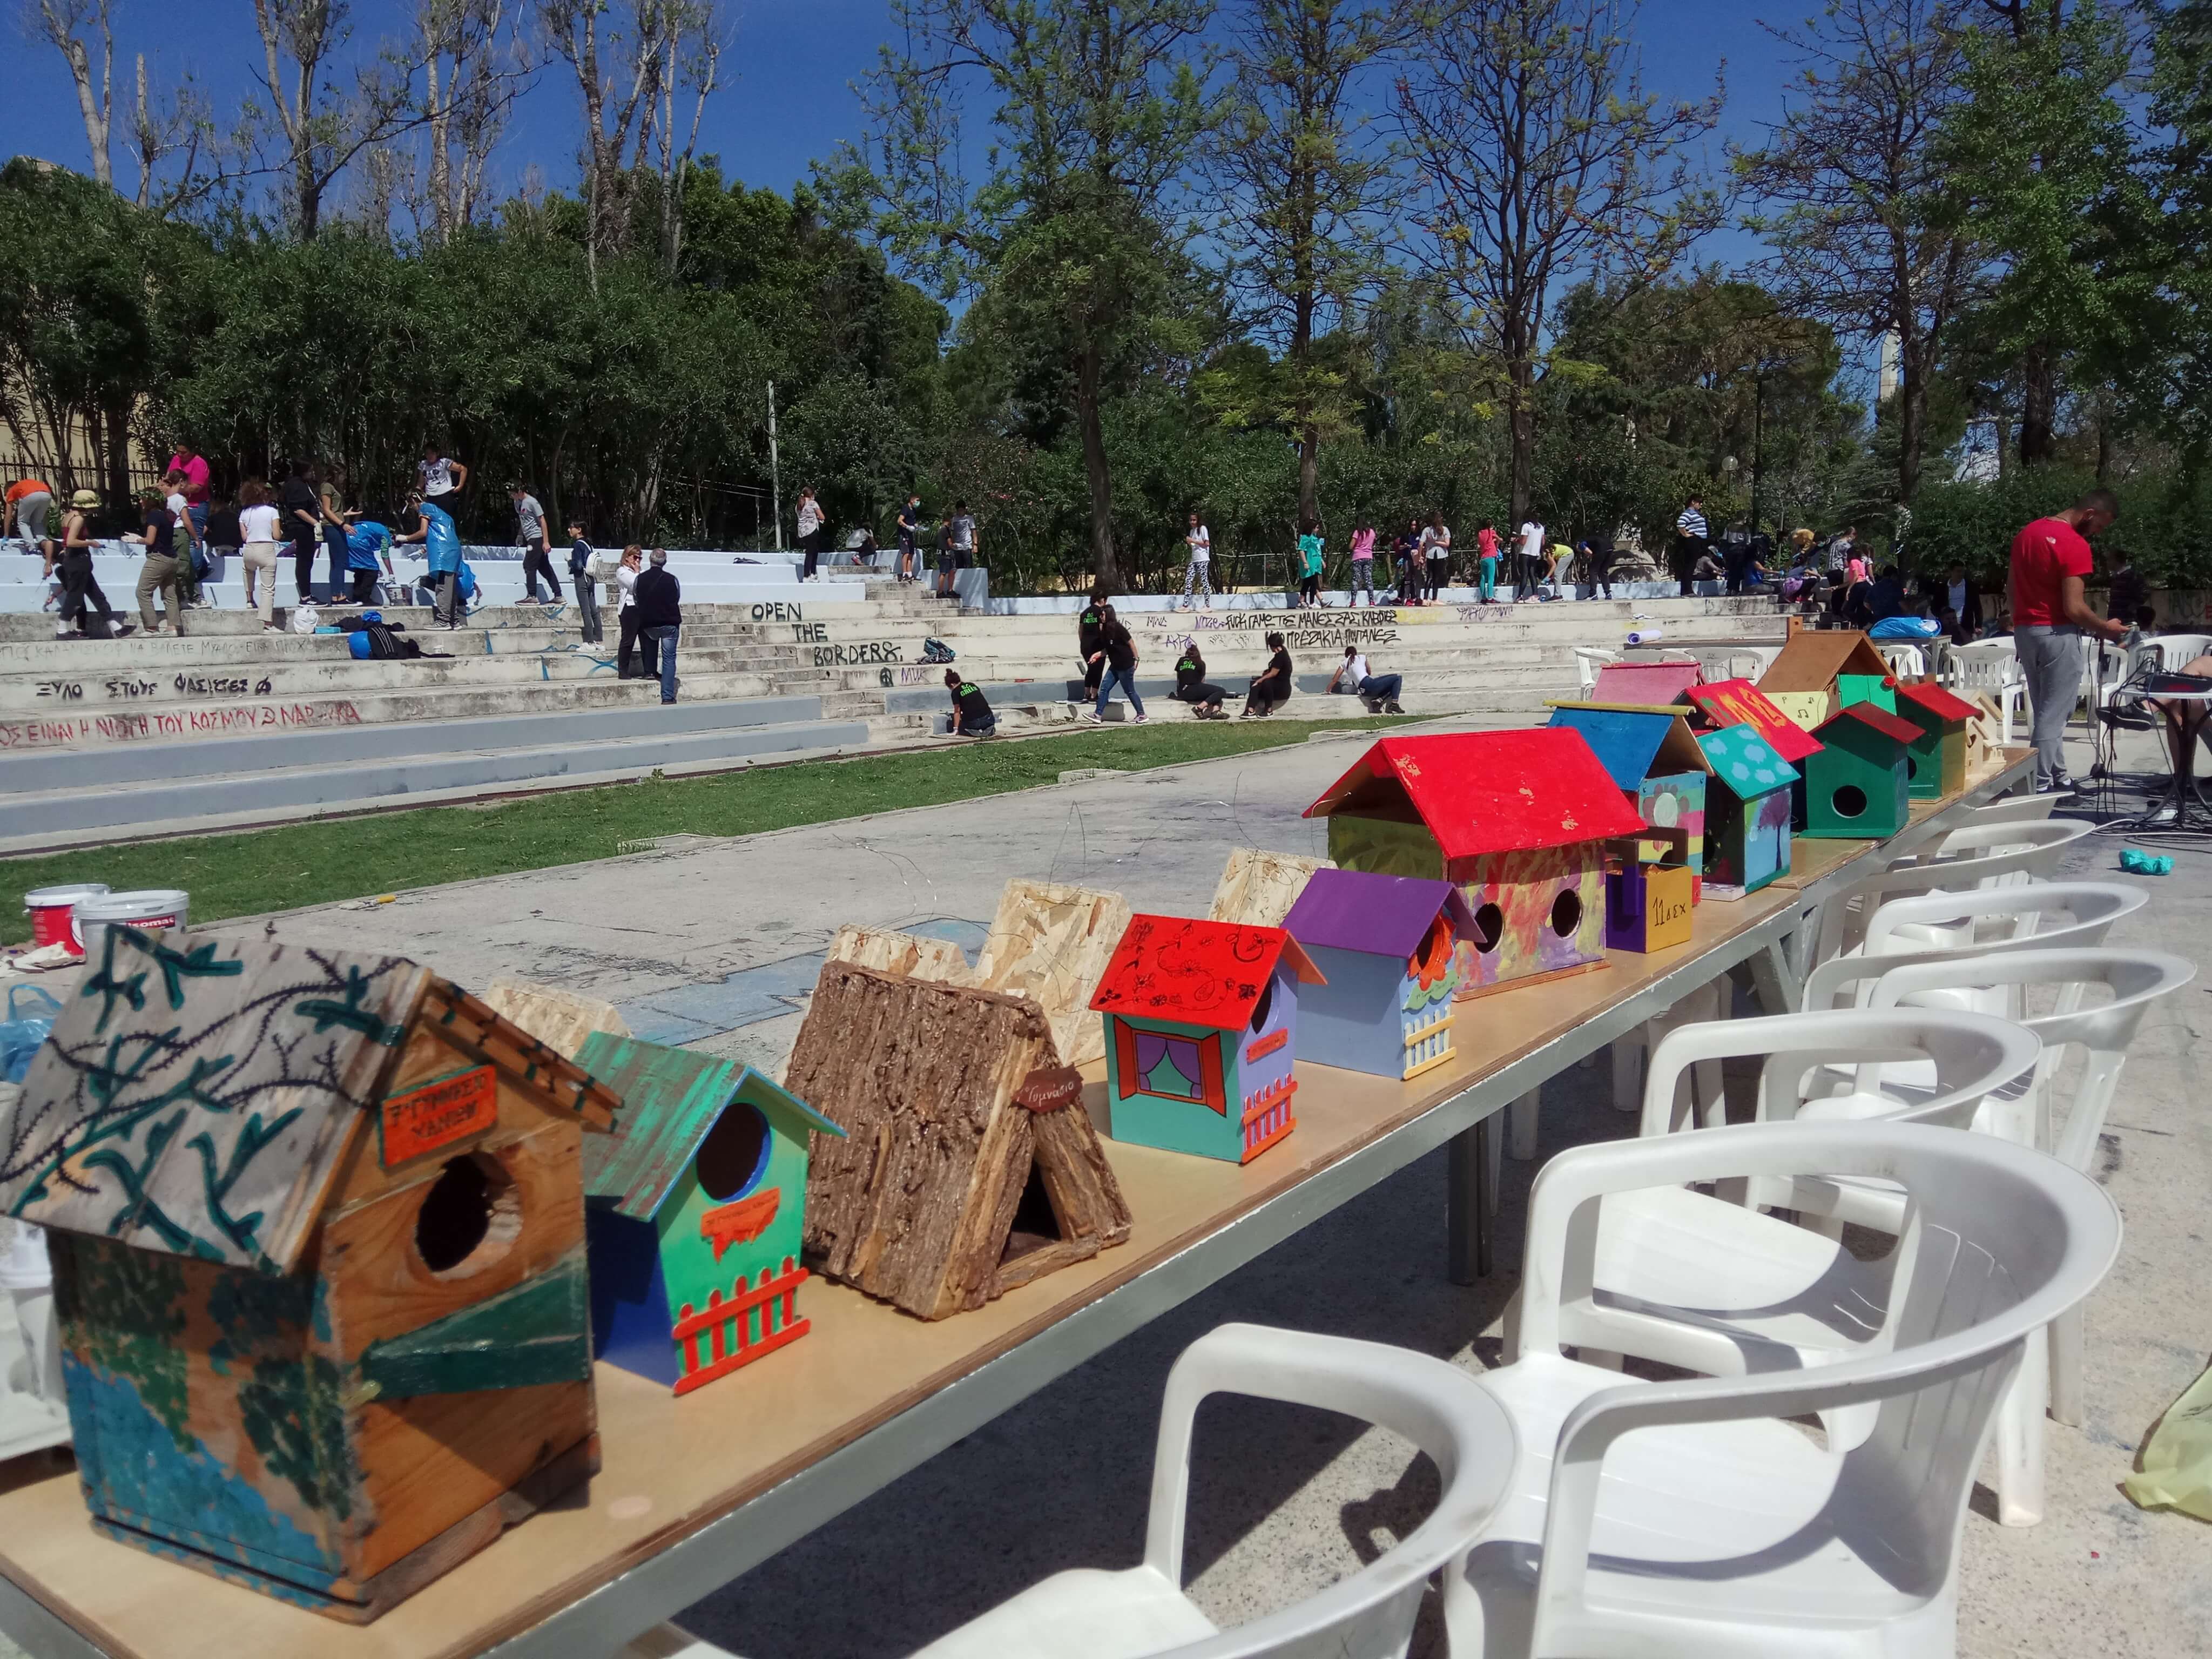 Χανιά: Μαθητές καθάρισαν κεντρικό πάρκο της πόλης – Αλλαγή σκηνικού μετά τις παιδικές προσπάθειες [pics]